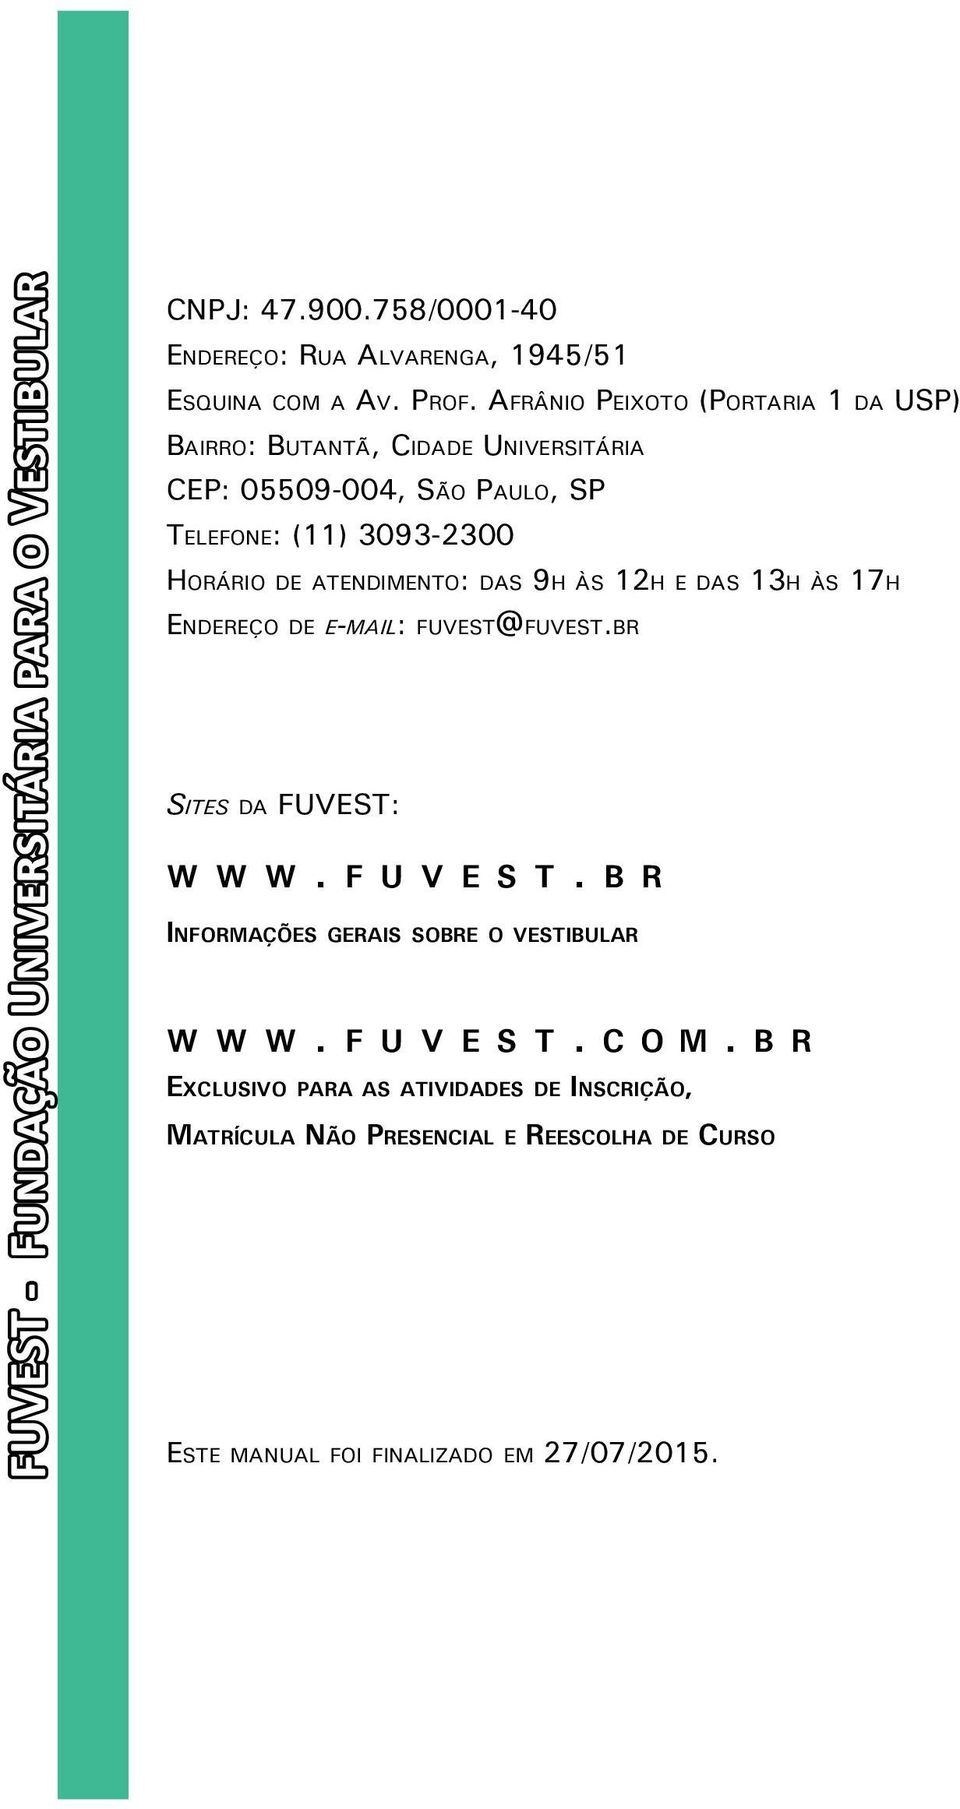 atendimento: das 9h às 12h e das 13h às 17h Endereço de e-mail: fuvest@fuvest.br Sites da FUVEST: w w w. f u v e s t.